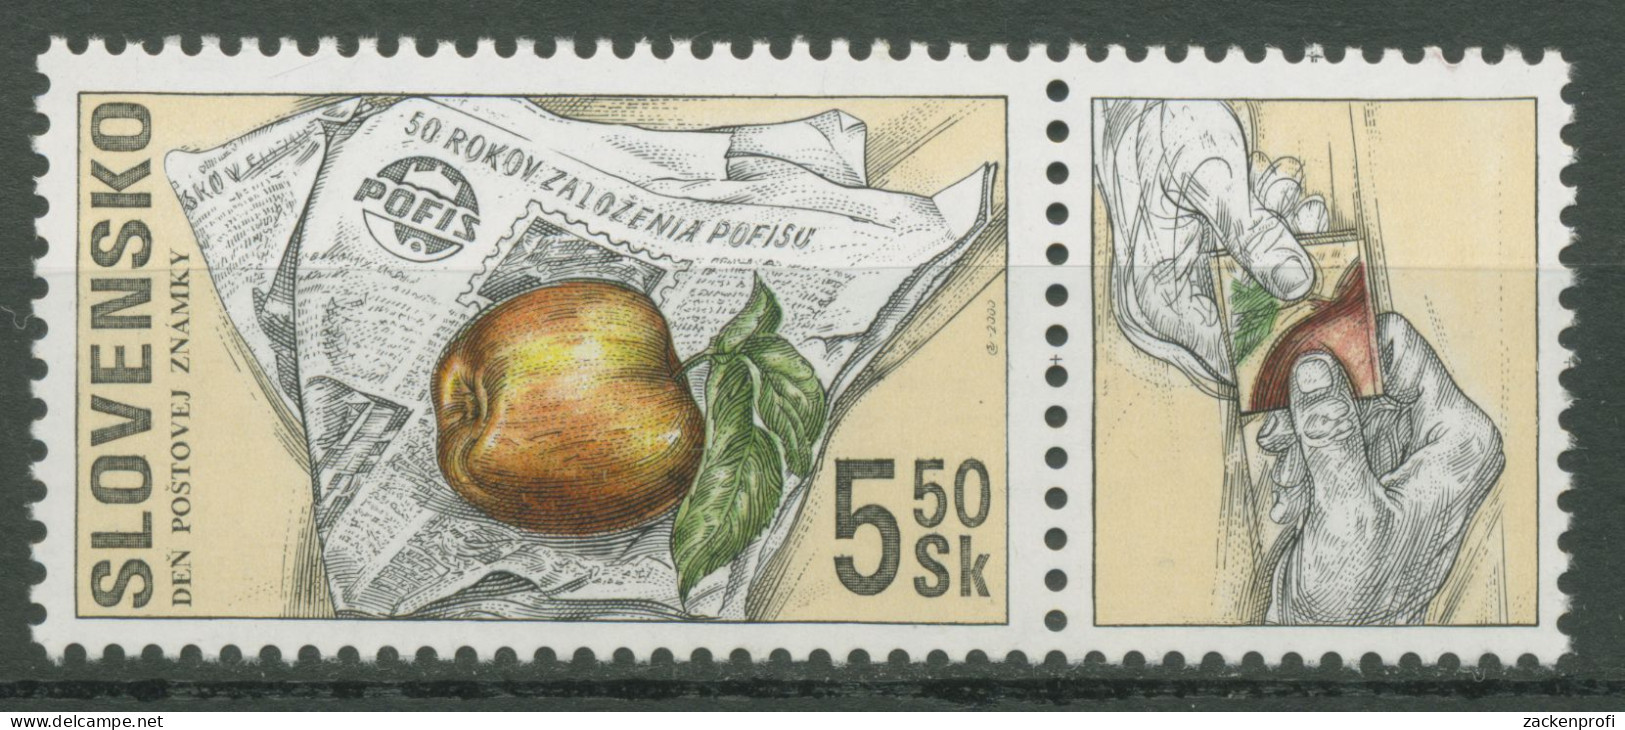 Slowakei 2000 Tag Der Briefmarke POFIS Zeitschrift 383 Zf Postfrisch - Unused Stamps